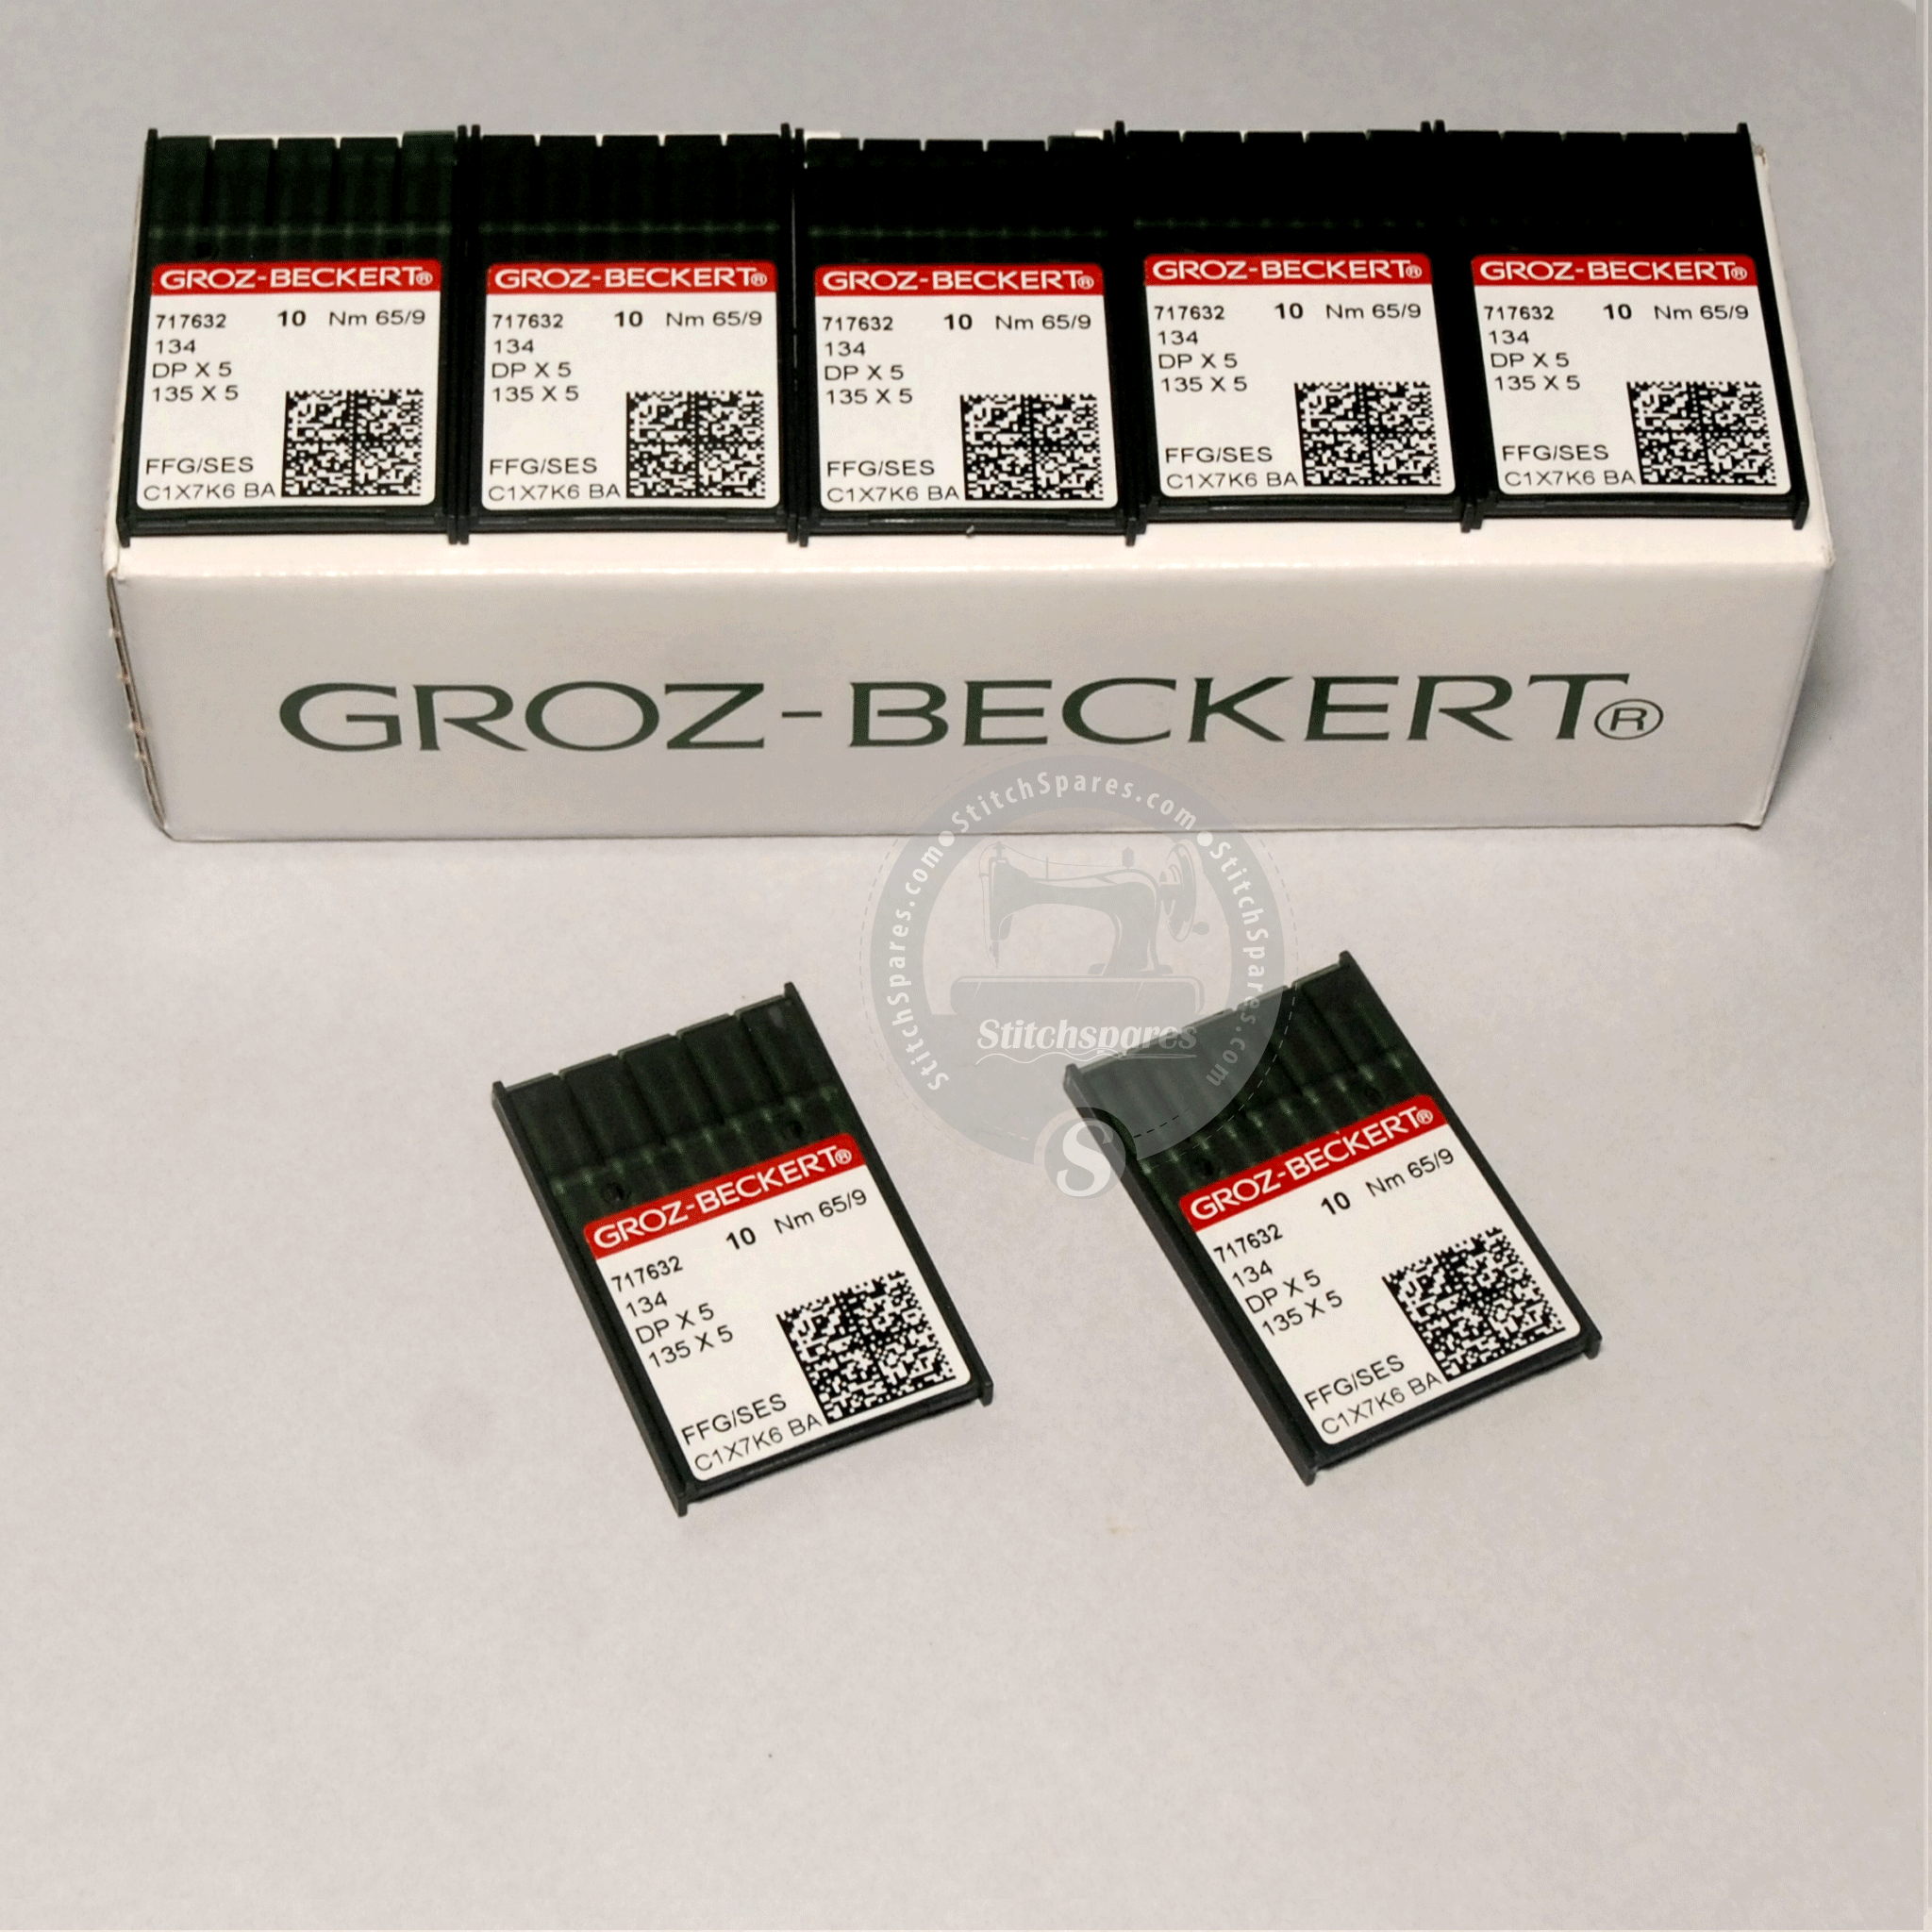 DPX5 659 134 135X5 FFG SES Groz Beckert Nadel für Knopflochnähmaschine